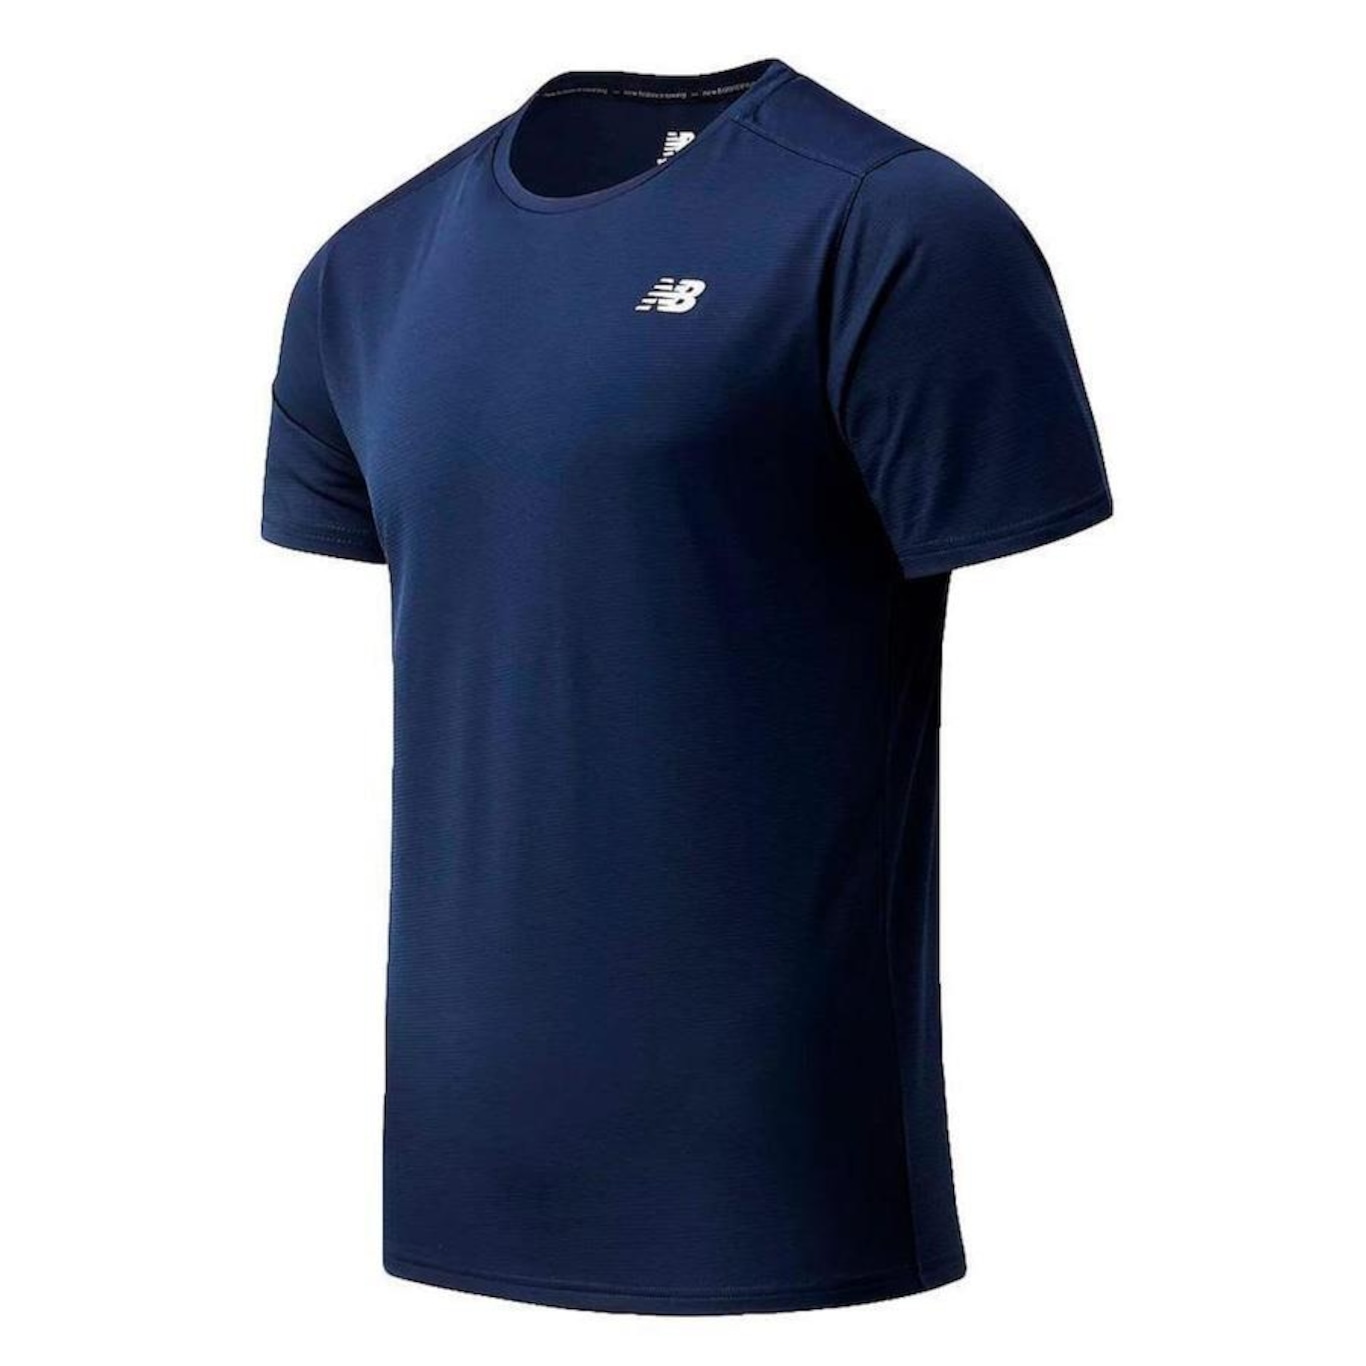 Camiseta New Balance Accelerate - Masculina